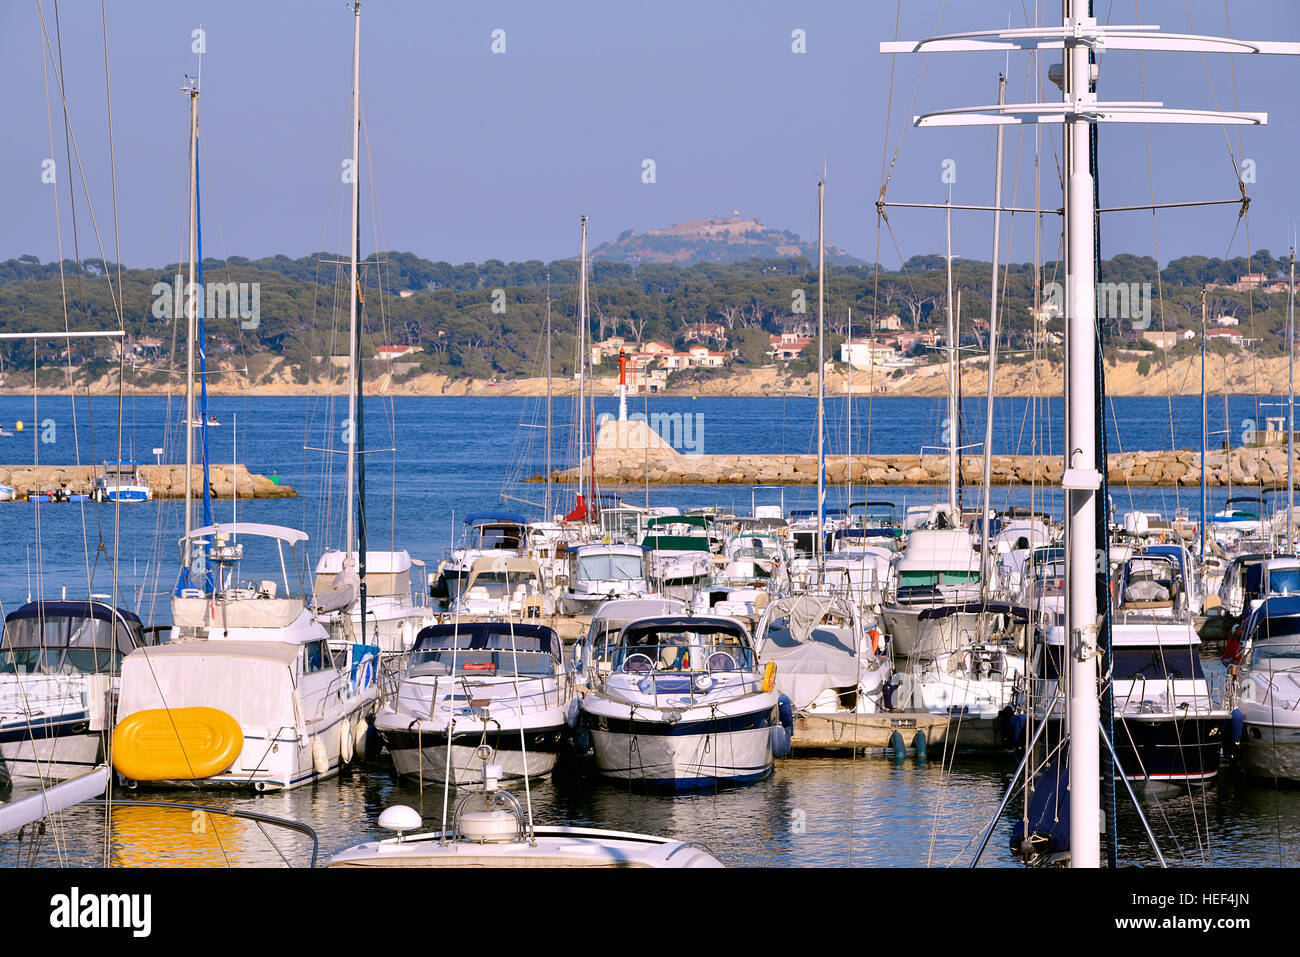 Port de Bandol, située dans le département du Var et la région Provence-Alpes-Côte d'Azur. Banque D'Images